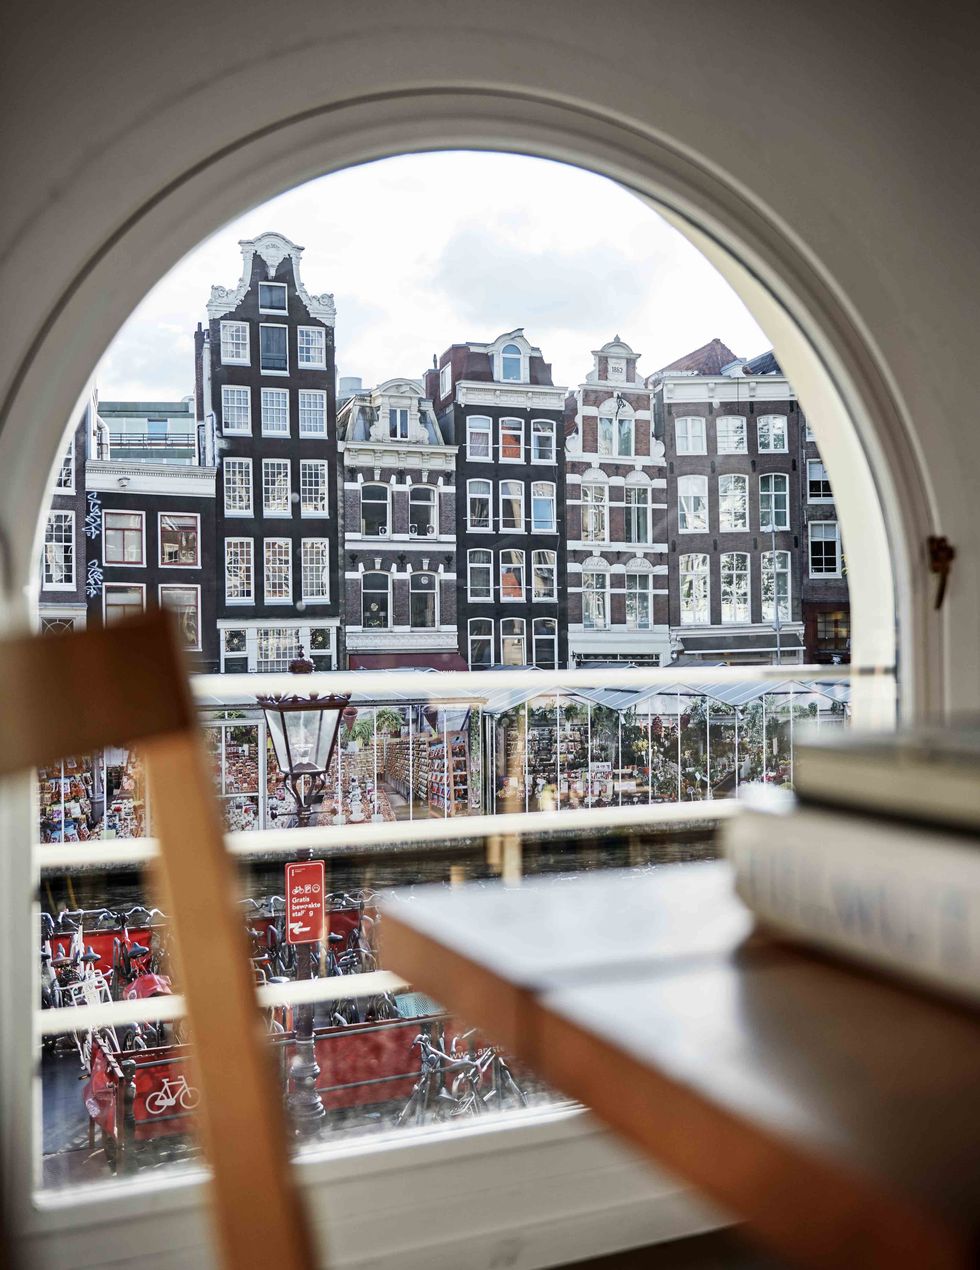 Binnenkijken bij de mooiste grachtenpanden van Amsterdam